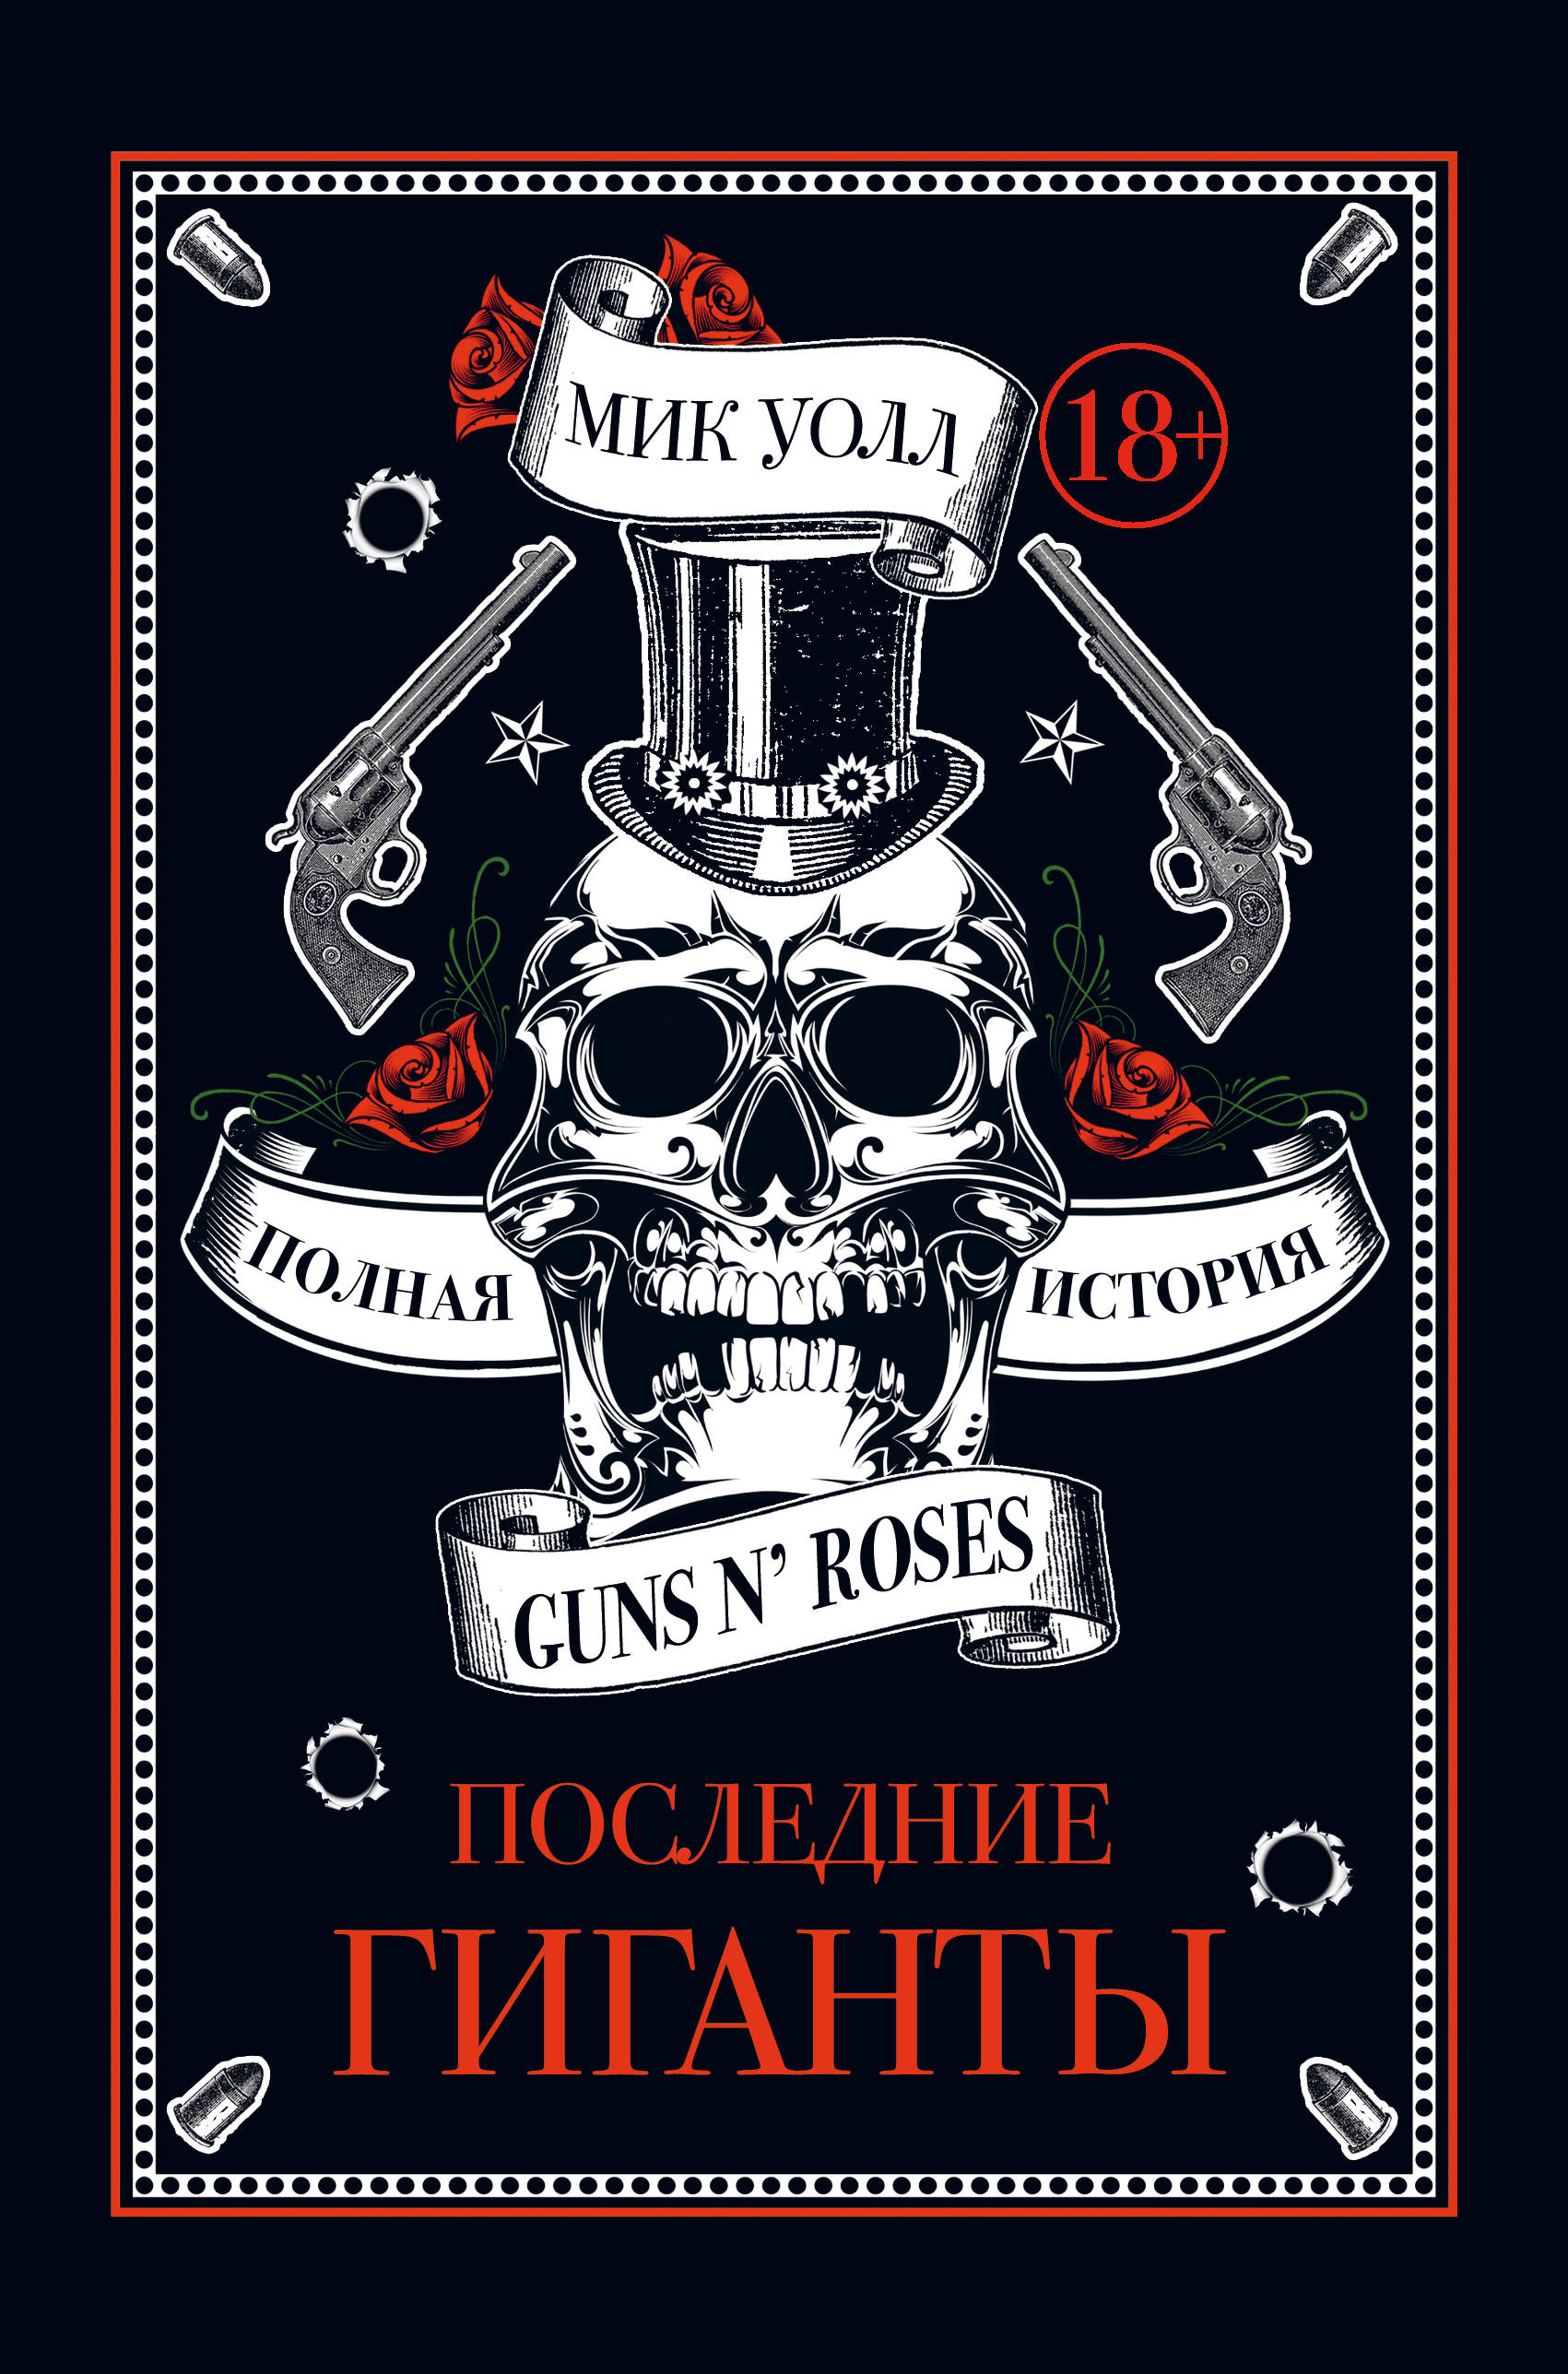  .   Guns N' Roses